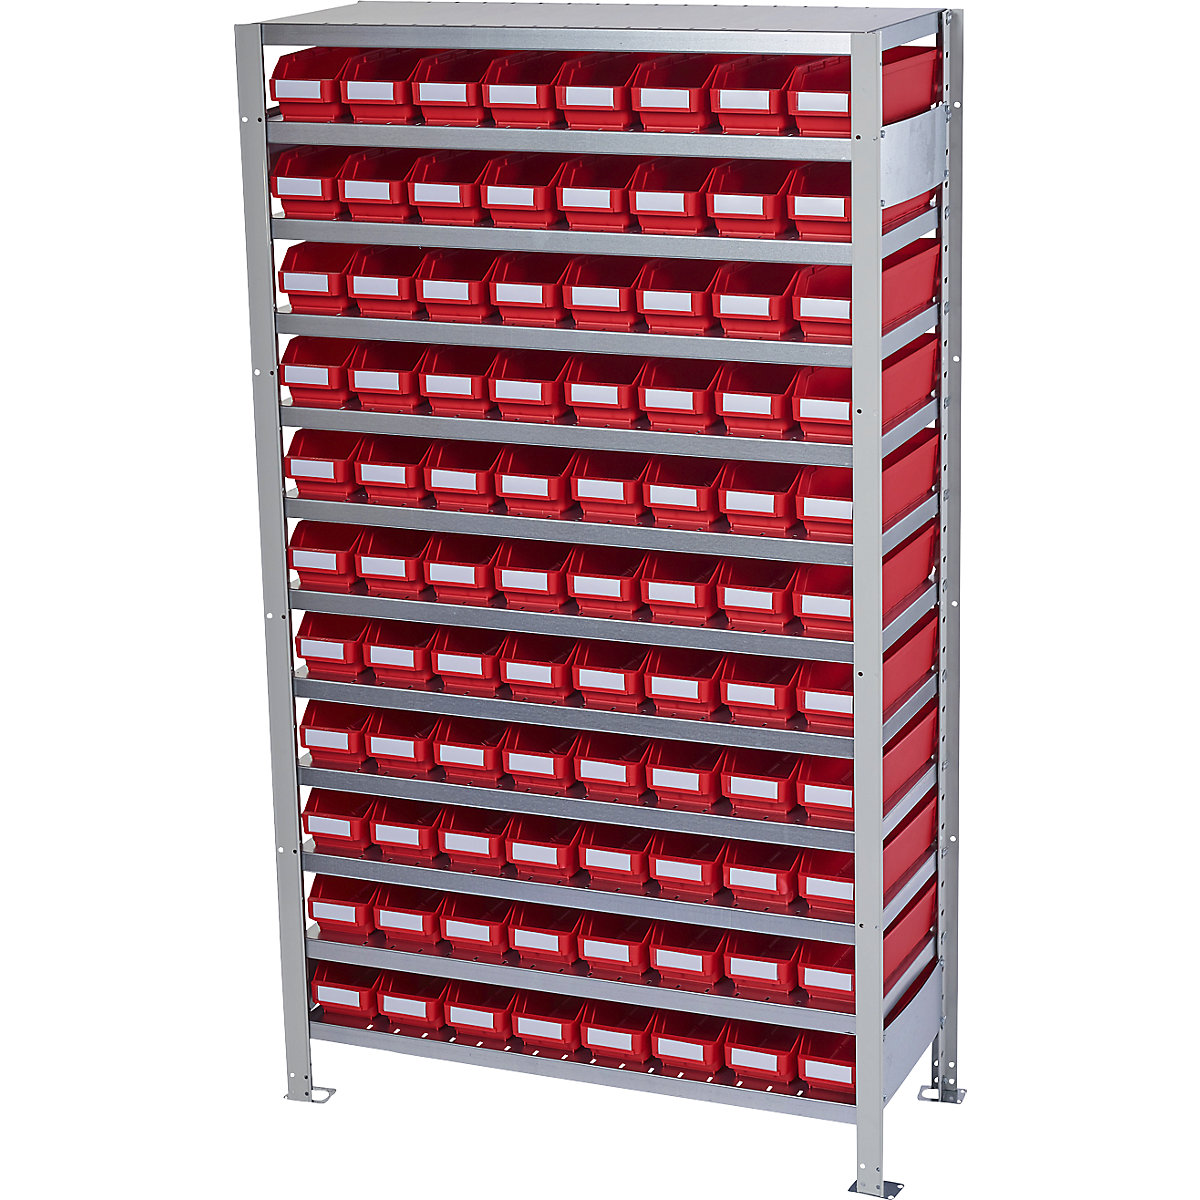 Összedugaszolós állvány dobozokkal – STEMO, állványmagasság 1790 mm, alapállvány, 400 mm mély, 88 piros doboz-6